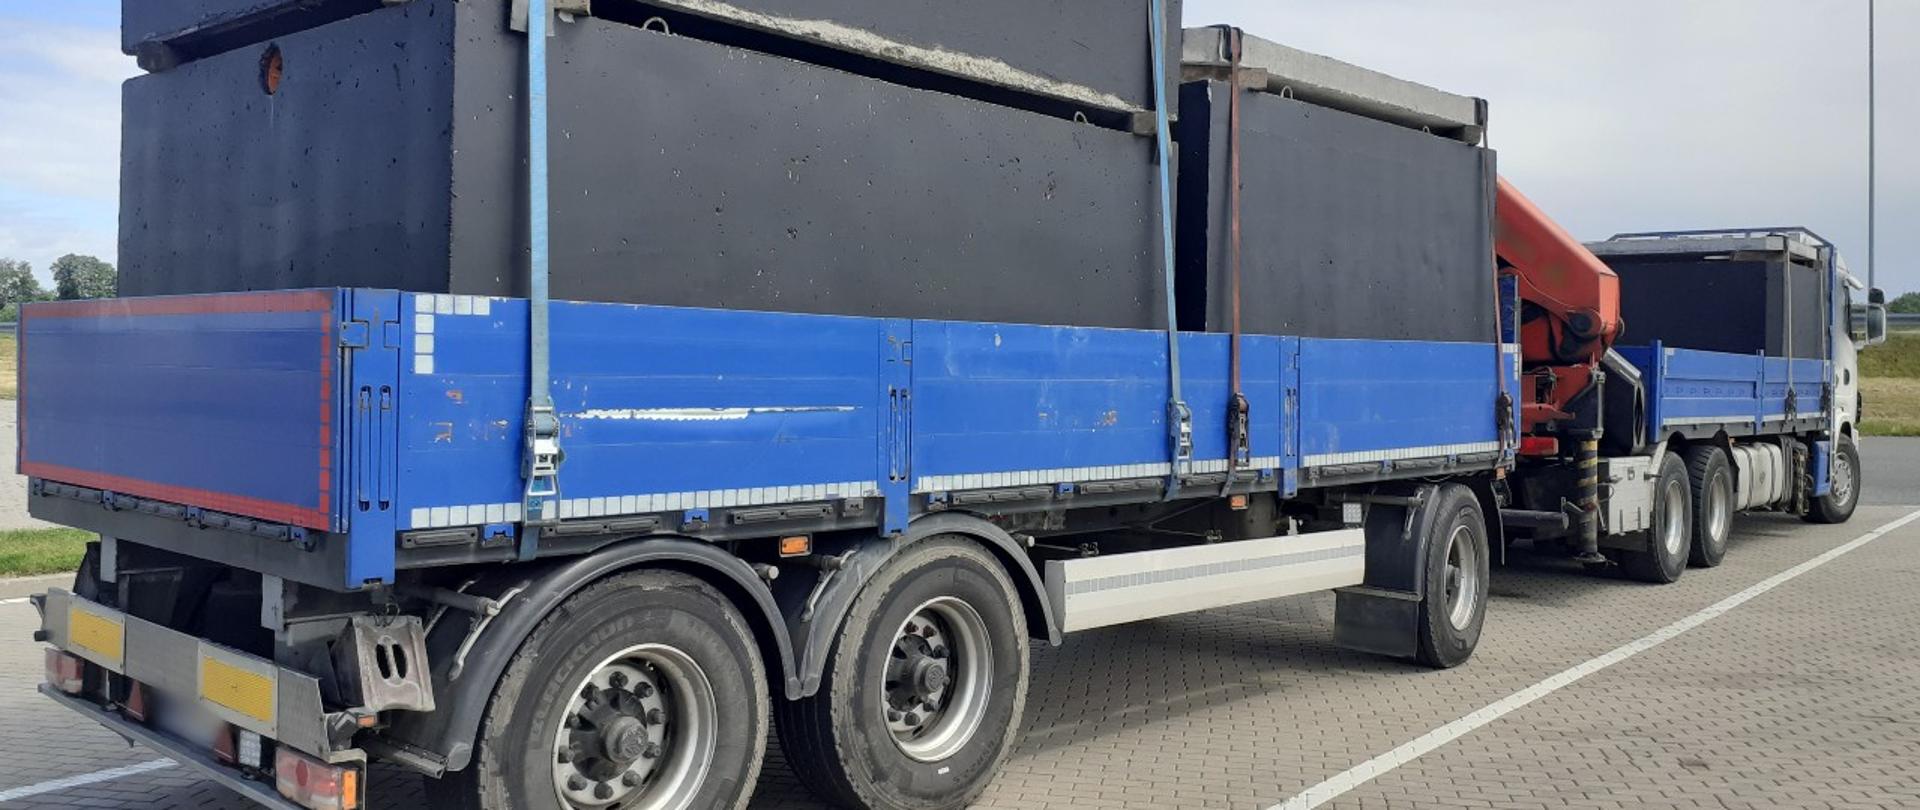 Samochód ciężarowy z przyczepą, przewożący trzy szamba betonowe, stoi w punkcie kontrolnym warmińsko-mazurskiej ITD.